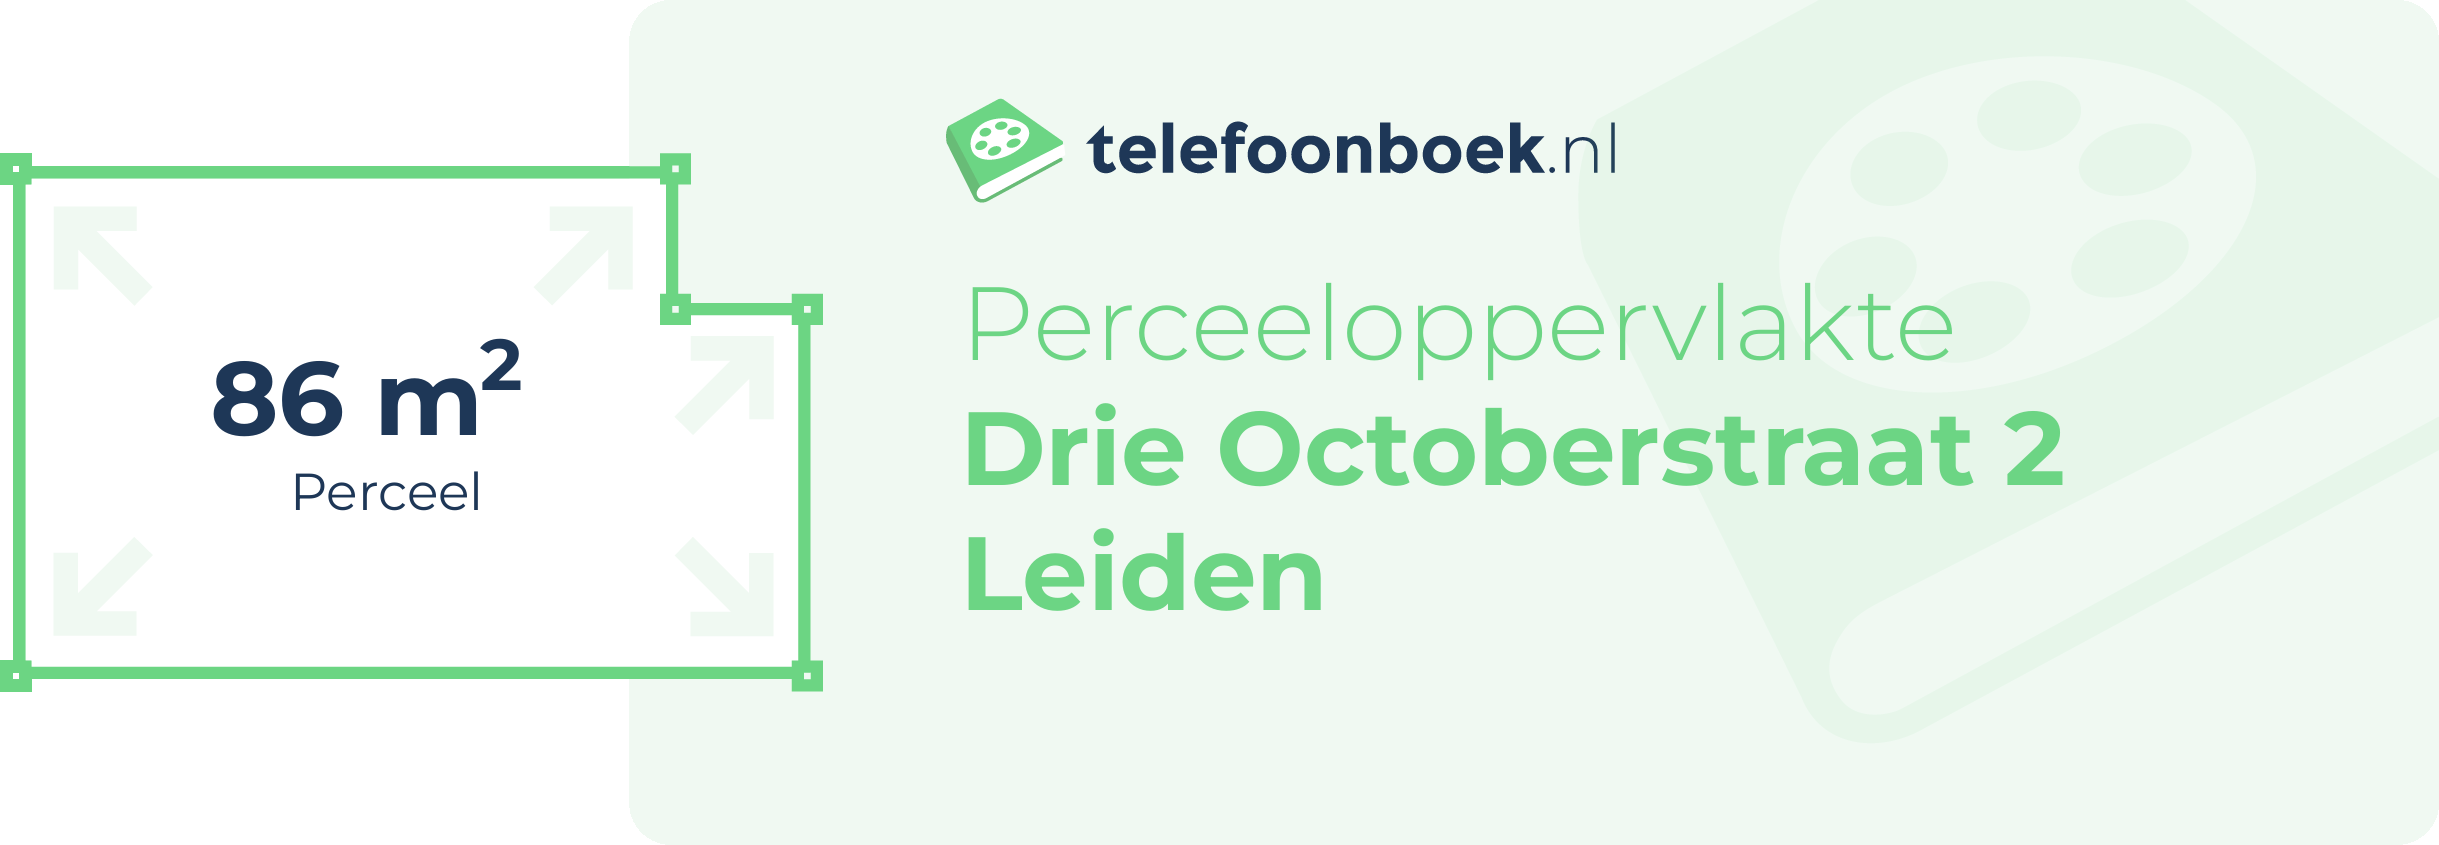 Perceeloppervlakte Drie Octoberstraat 2 Leiden